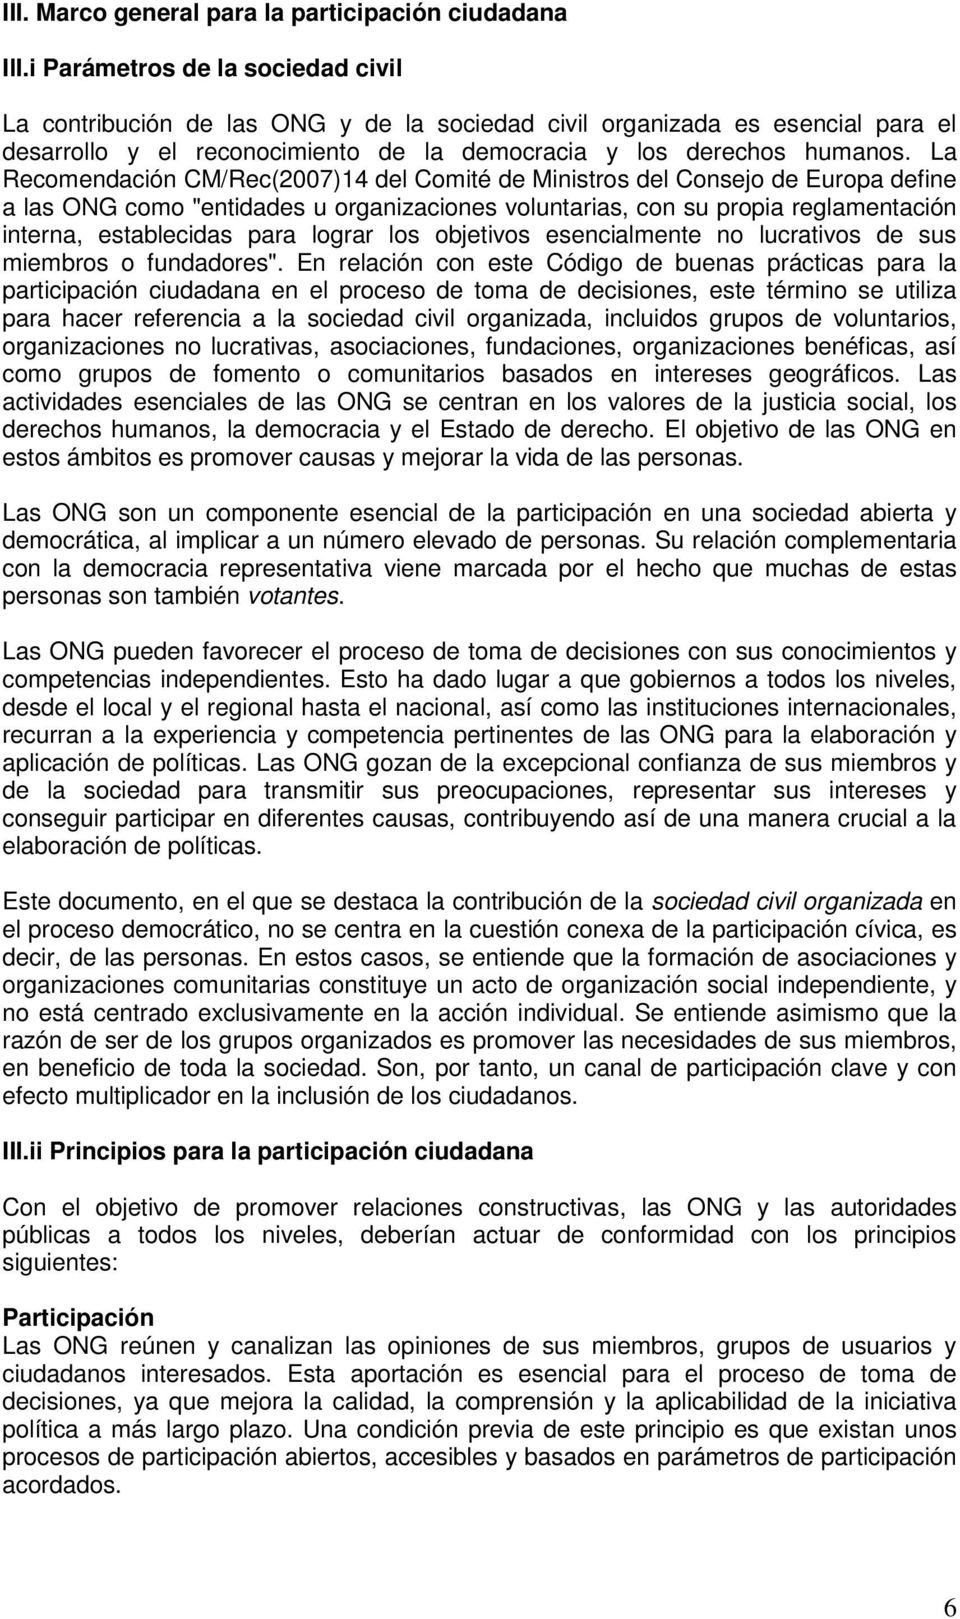 La Recomendación CM/Rec(2007)14 del Comité de Ministros del Consejo de Europa define a las ONG como "entidades u organizaciones voluntarias, con su propia reglamentación interna, establecidas para